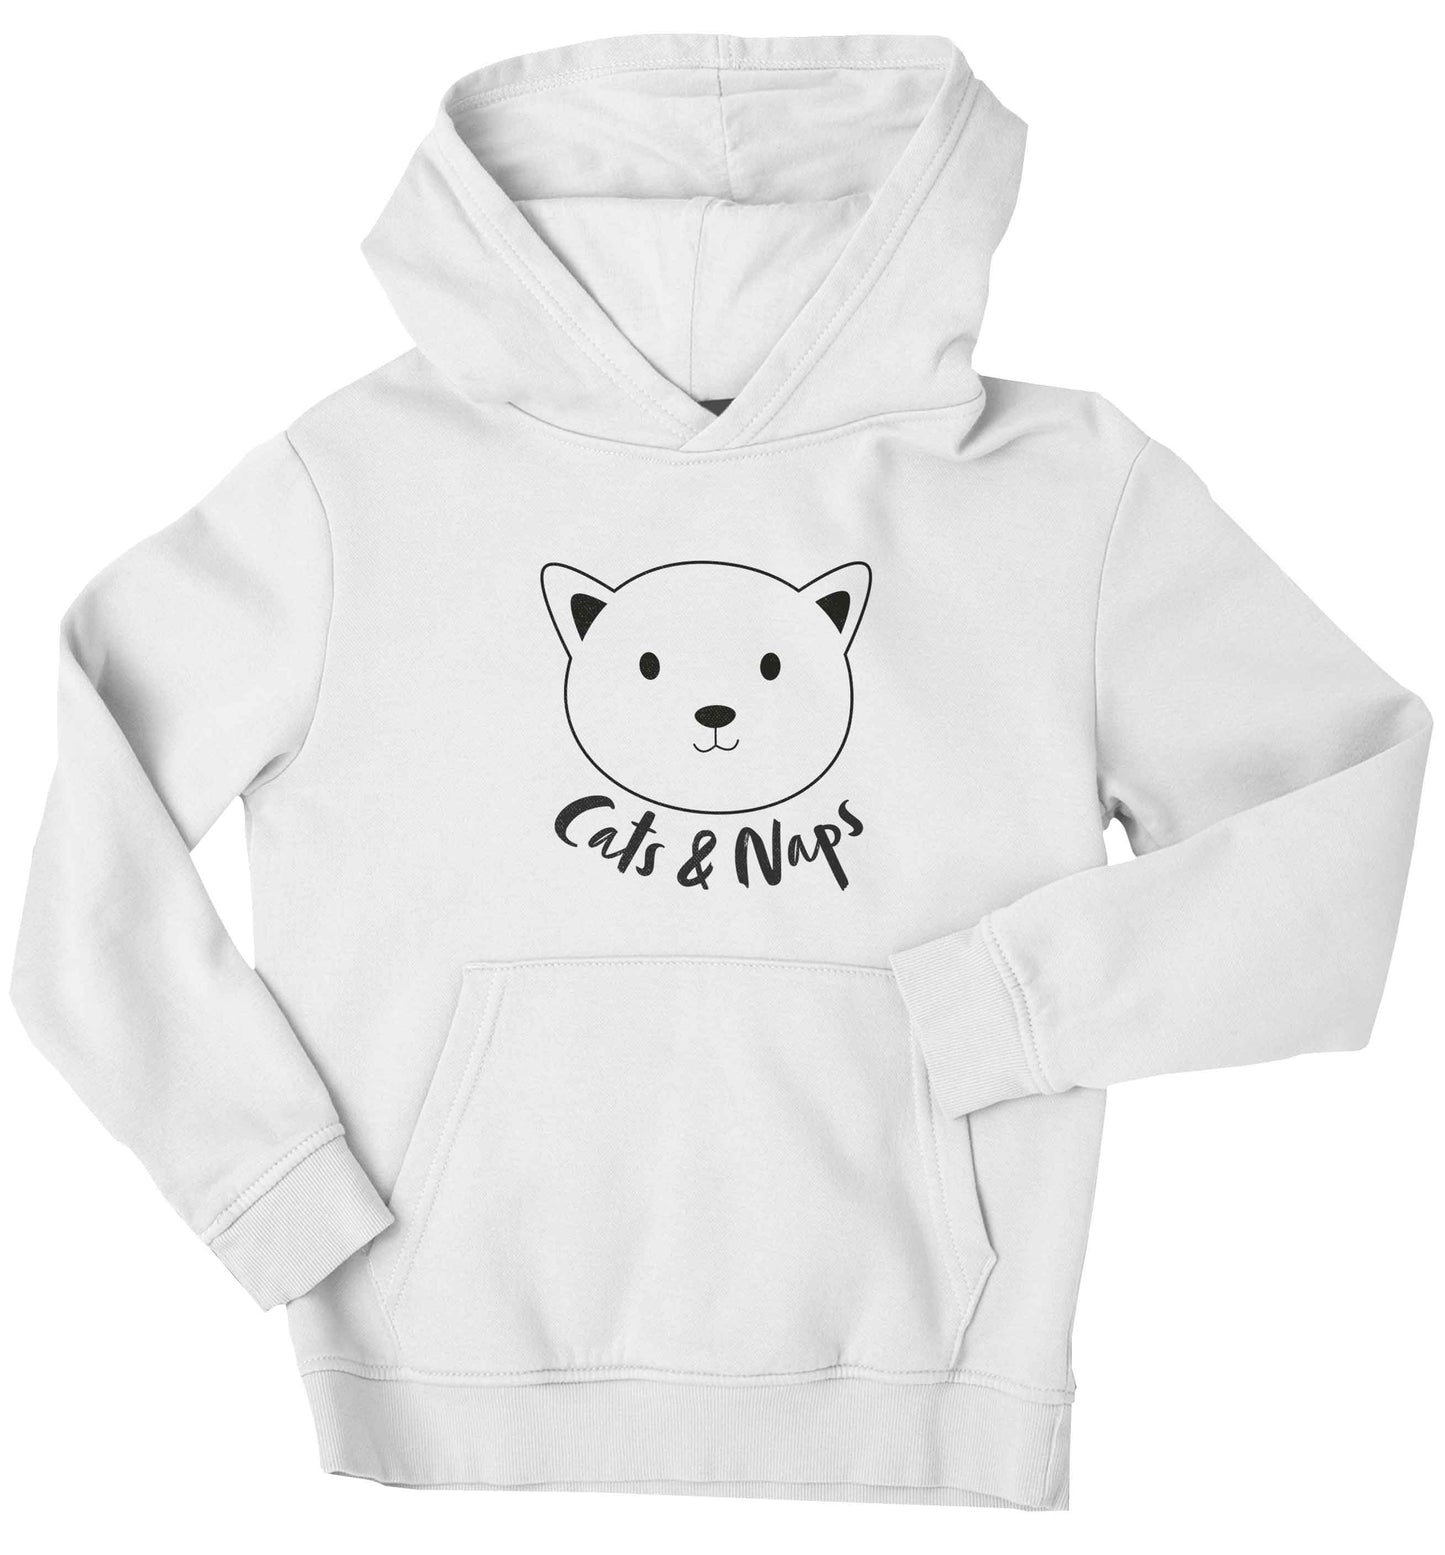 Cats and naps Kit children's white hoodie 12-13 Years